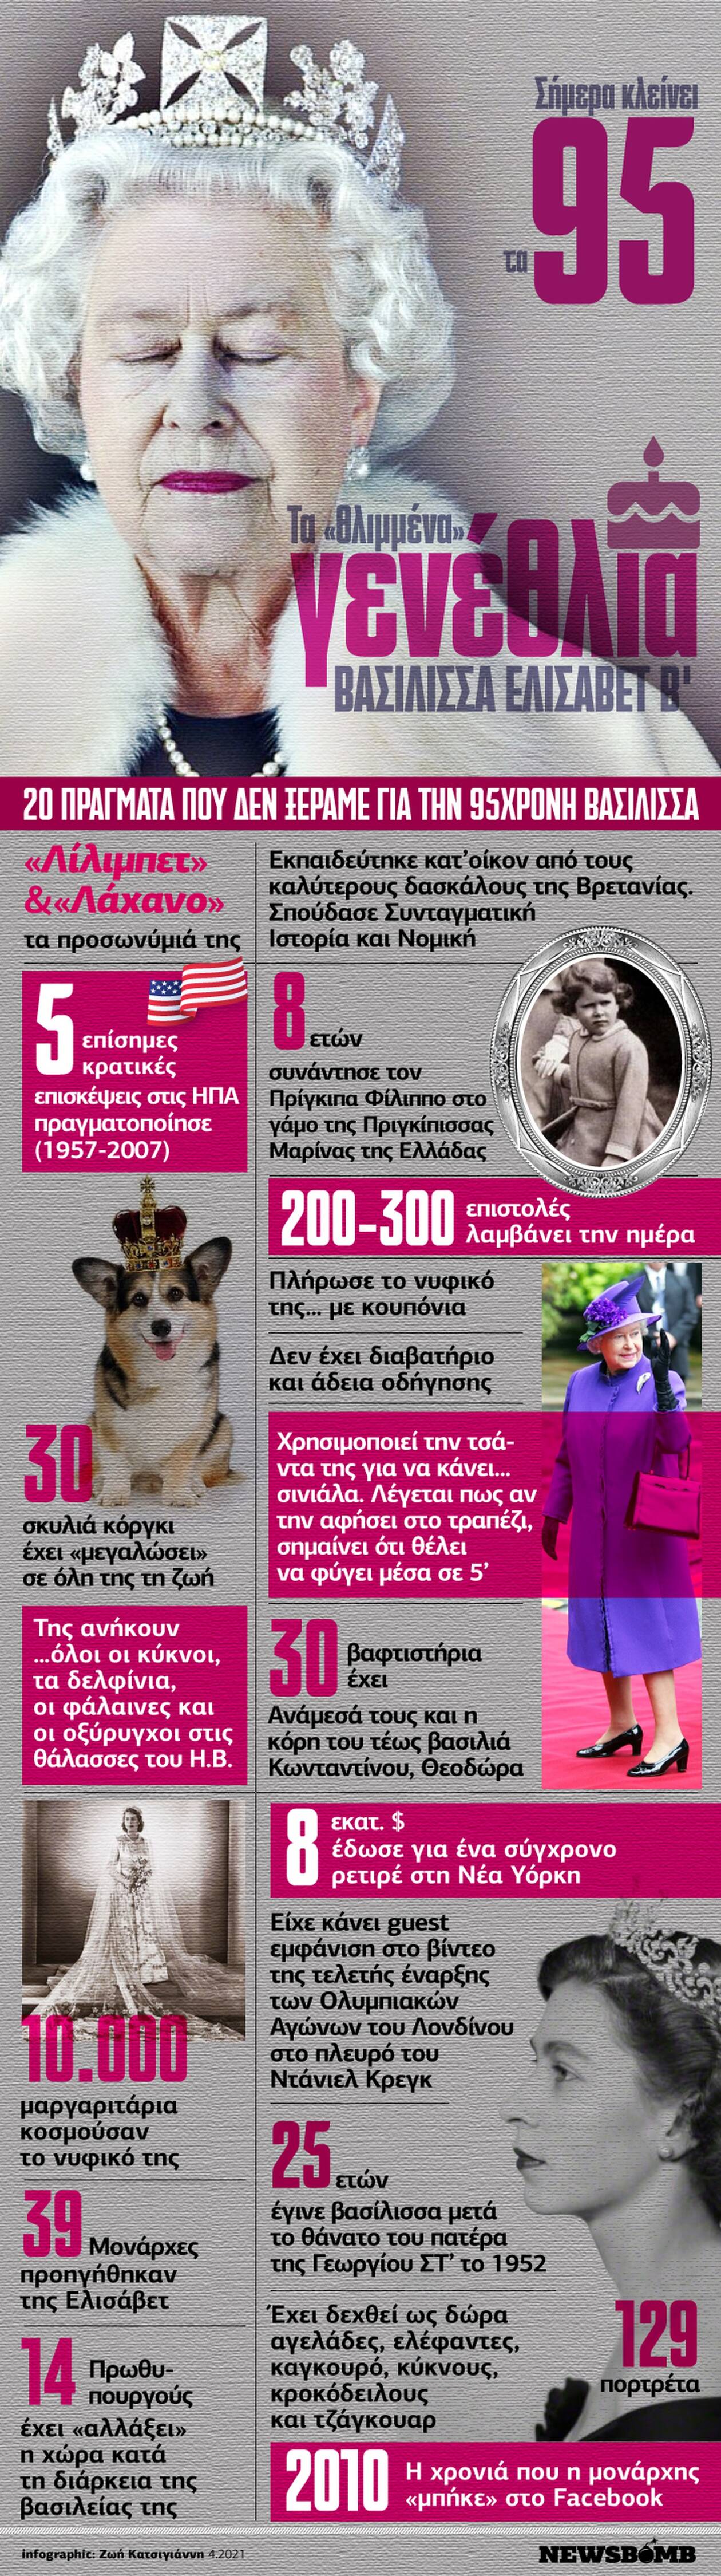 Bασίλισσα Ελισάβετ: Τα πρώτα γενέθλια σήμερα χωρίς...τον πρίγκιπά της-Το Infographic του Νewsbomb.gr